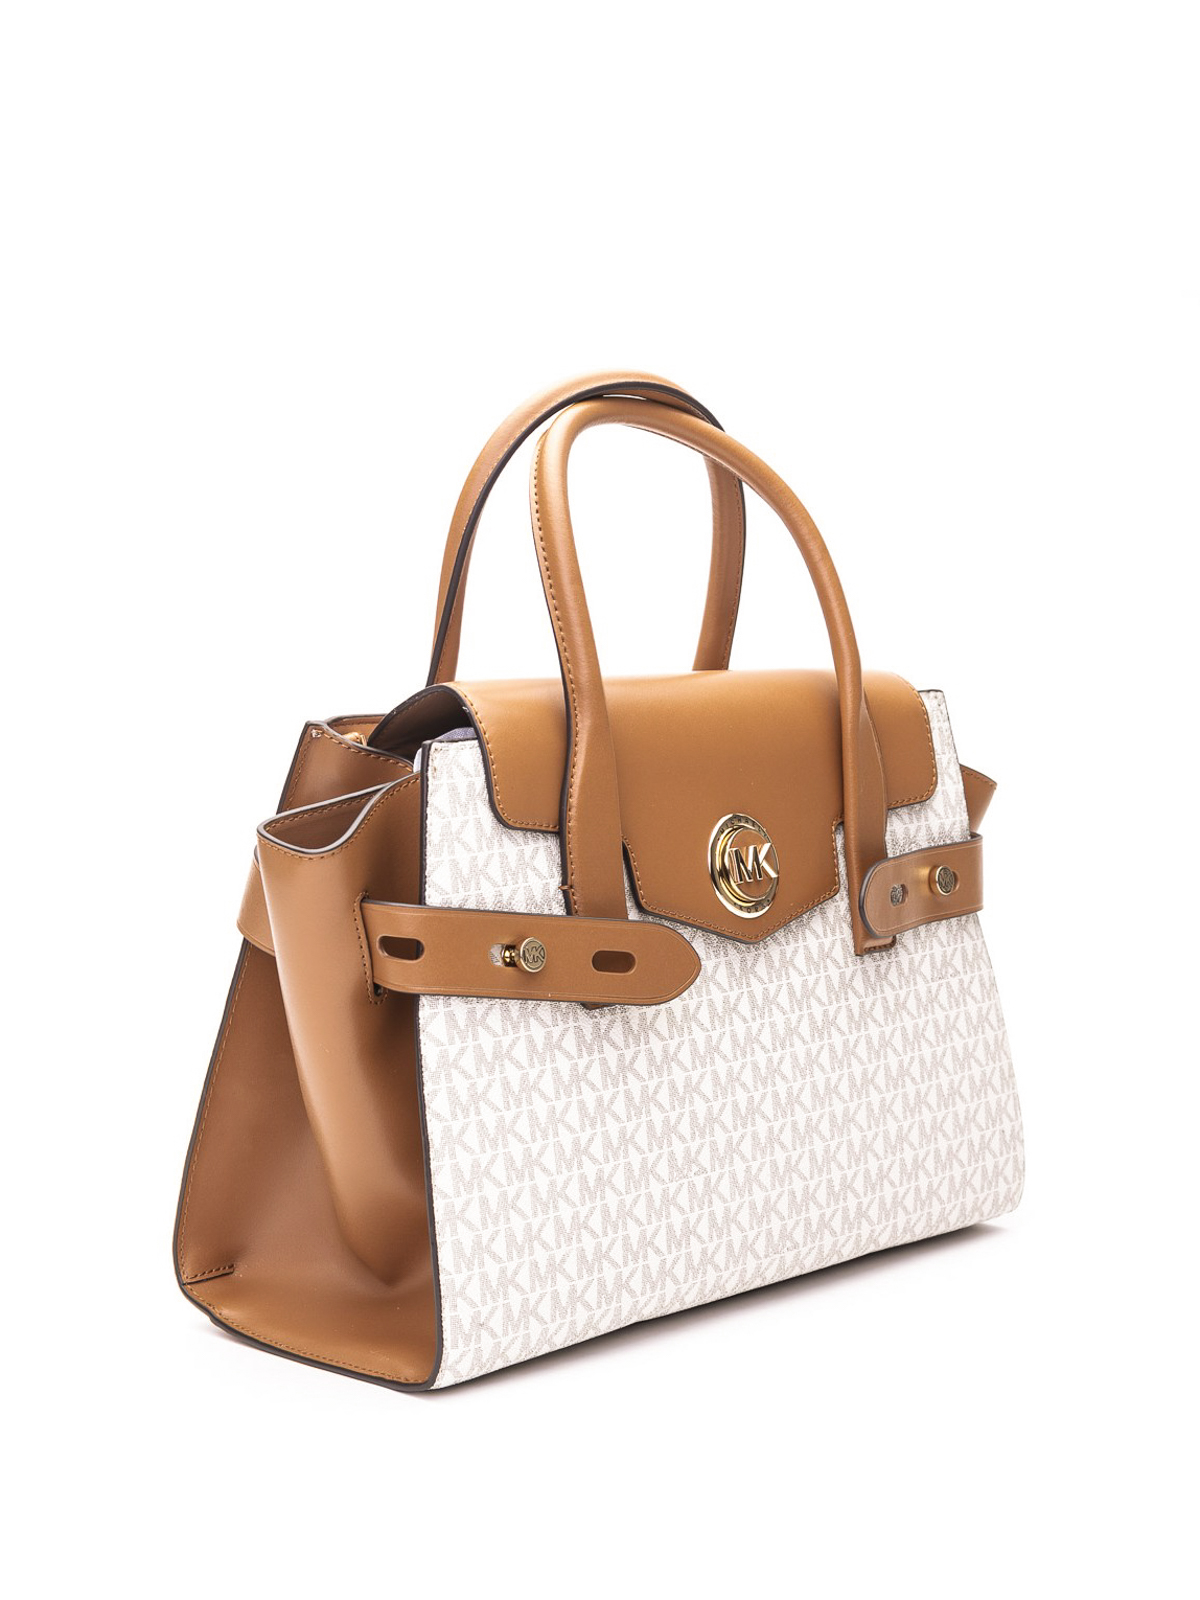 Shop Michael Kors Handbags online | Lazada.com.my